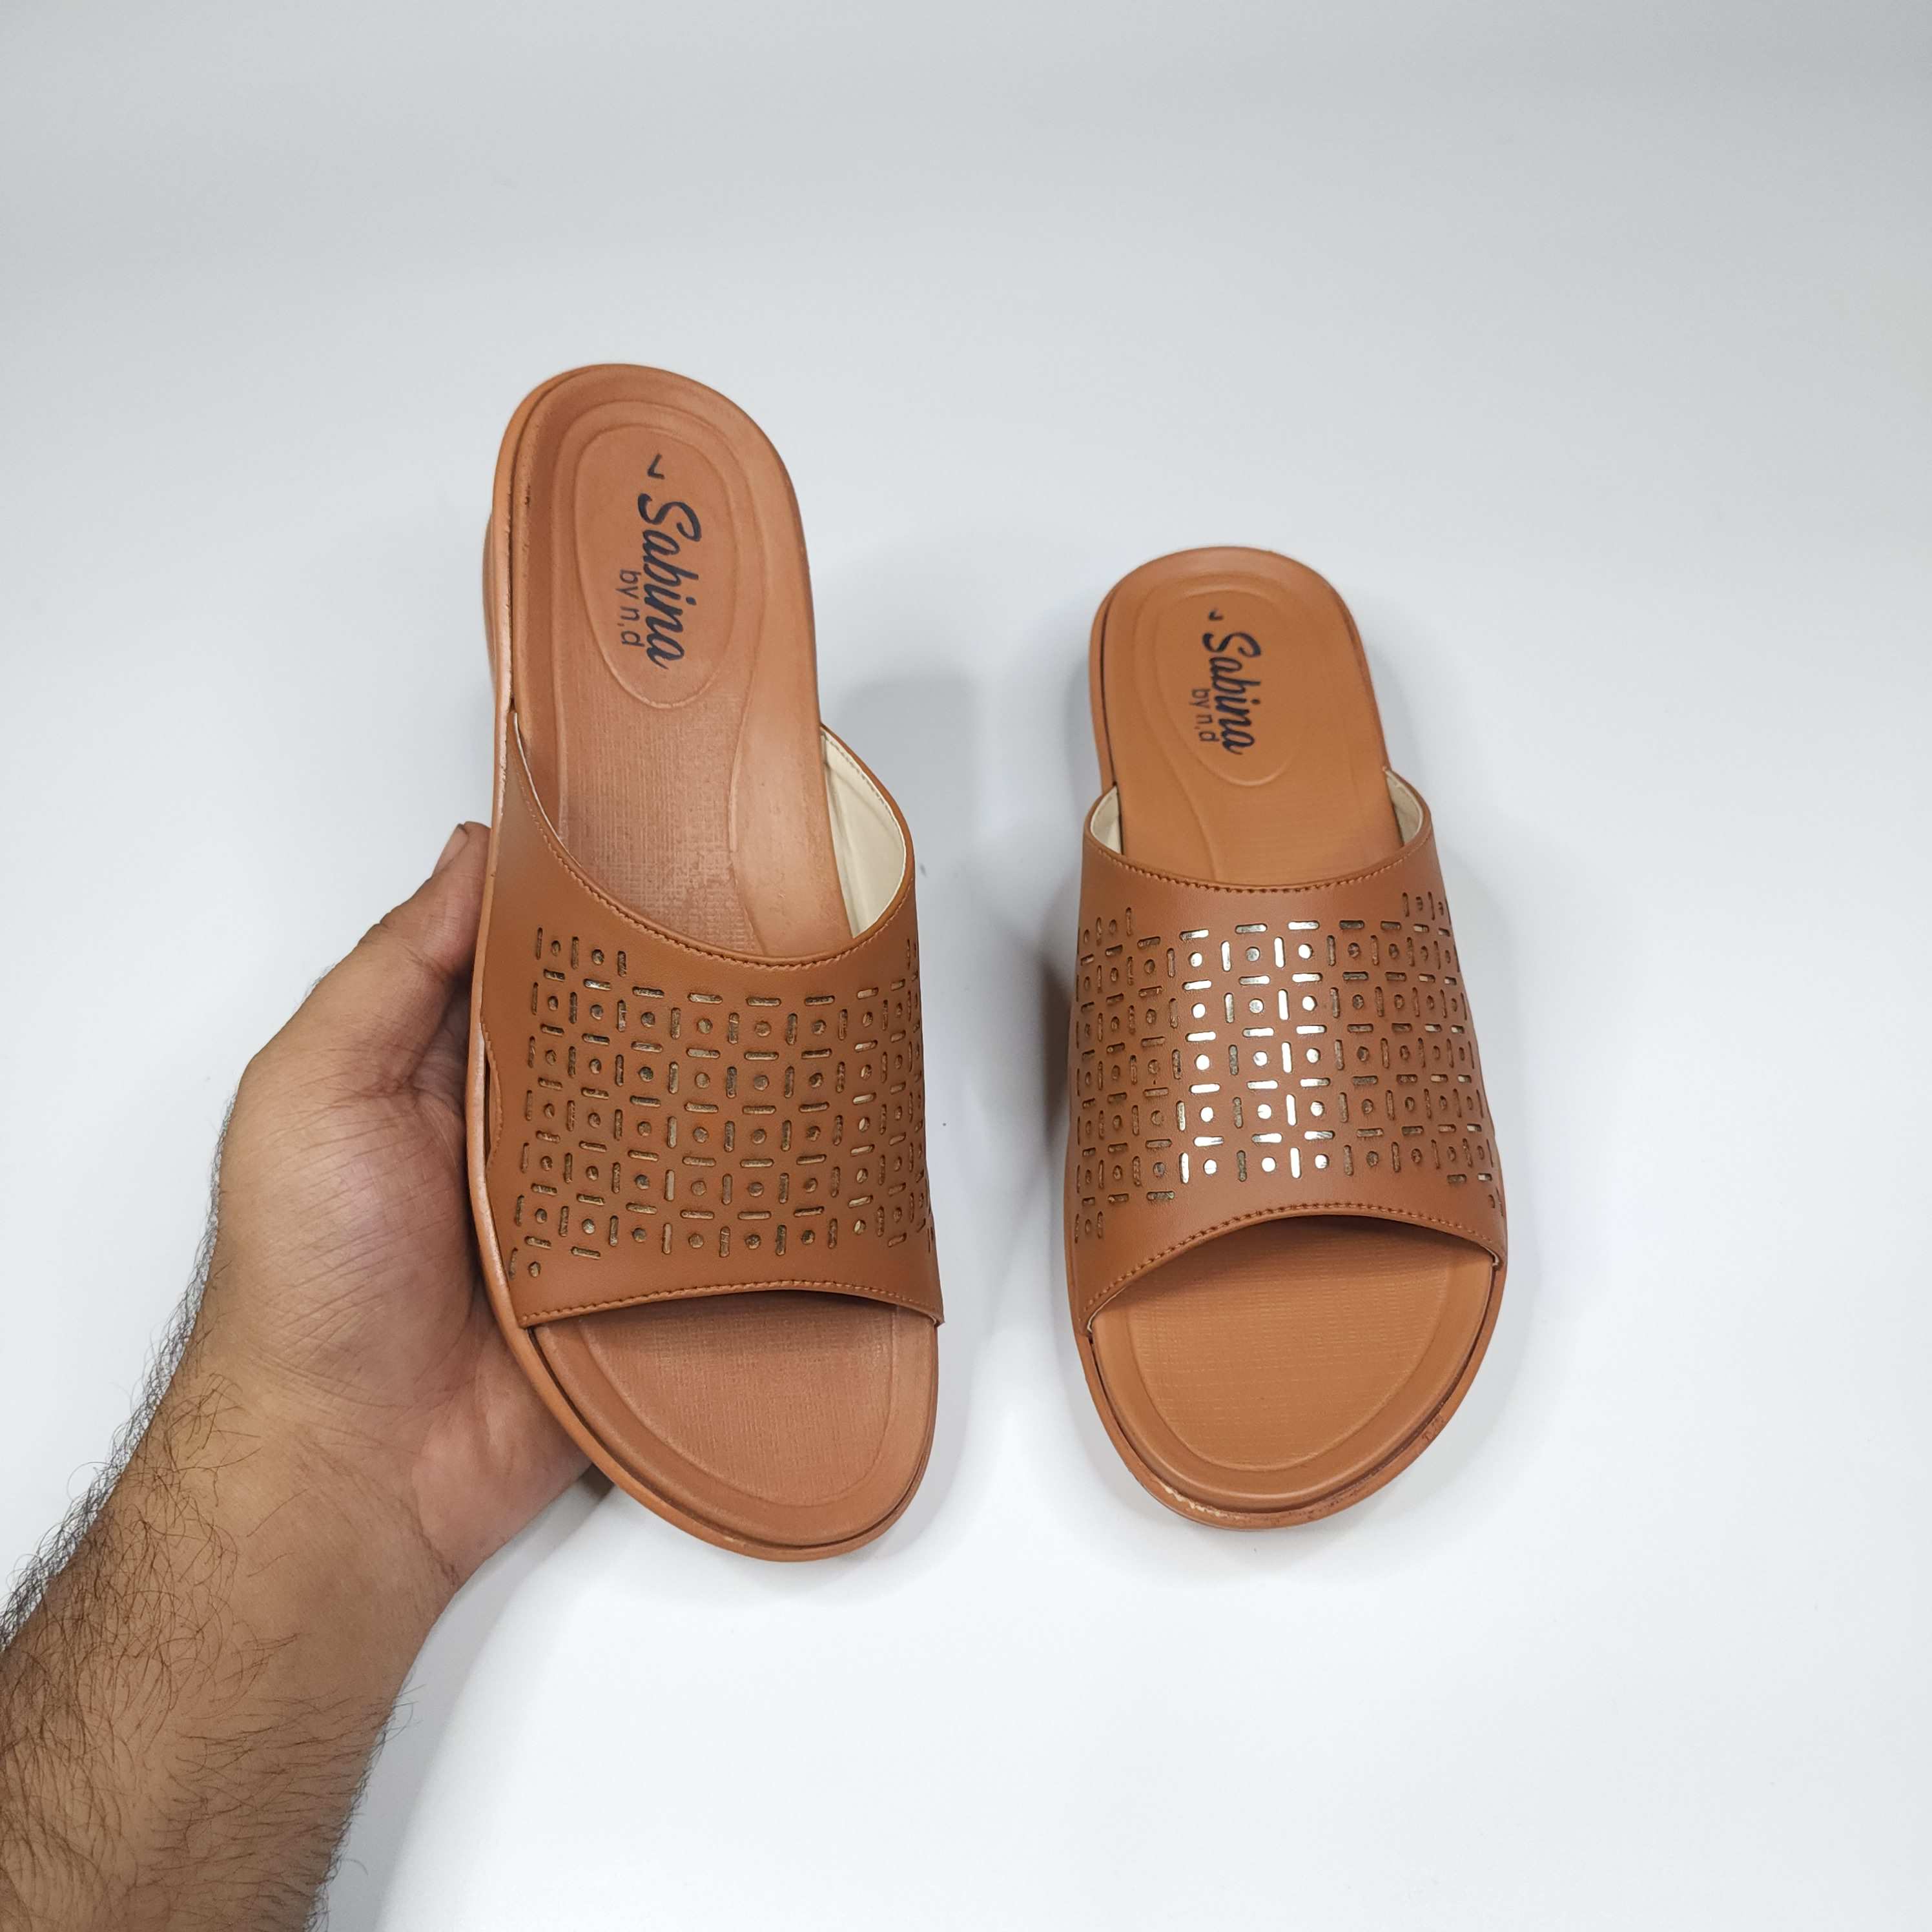 Mustard Slippers in Short Wedge - Maha fashions -  Women Footwear